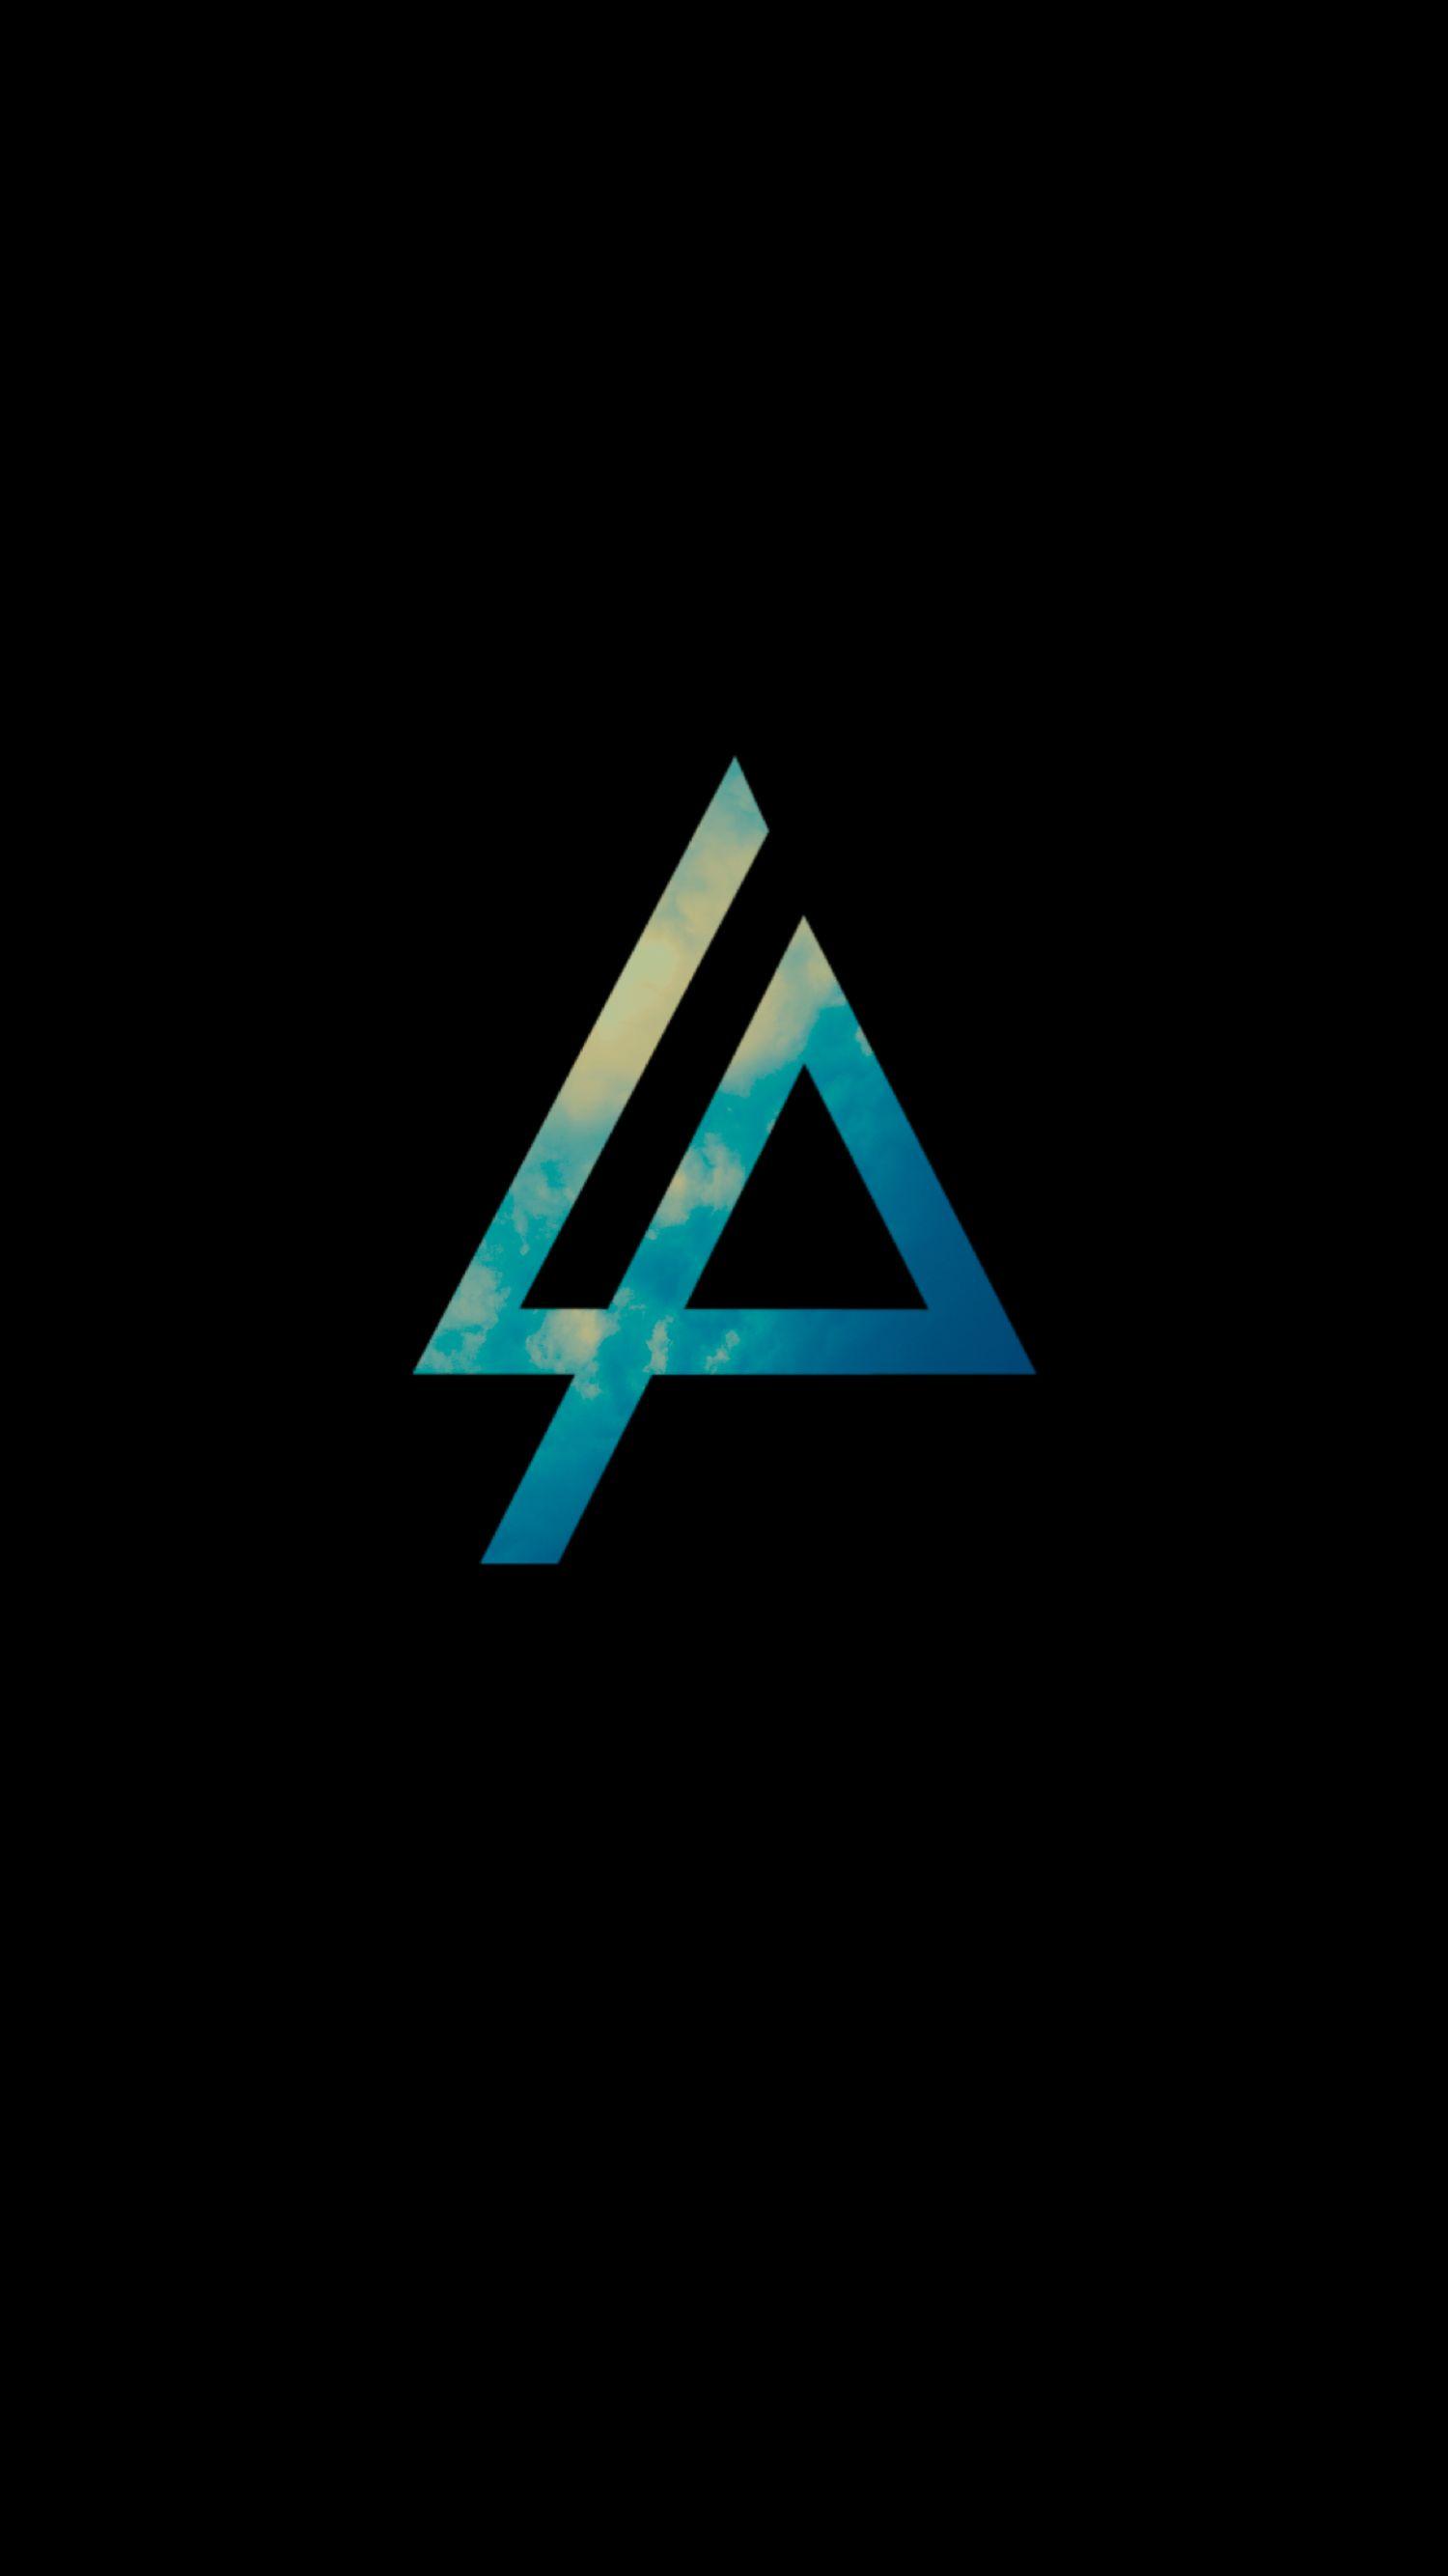 Linkin Park Logo - Linkin Park Logo | Linkin Park Wallpapers in 2019